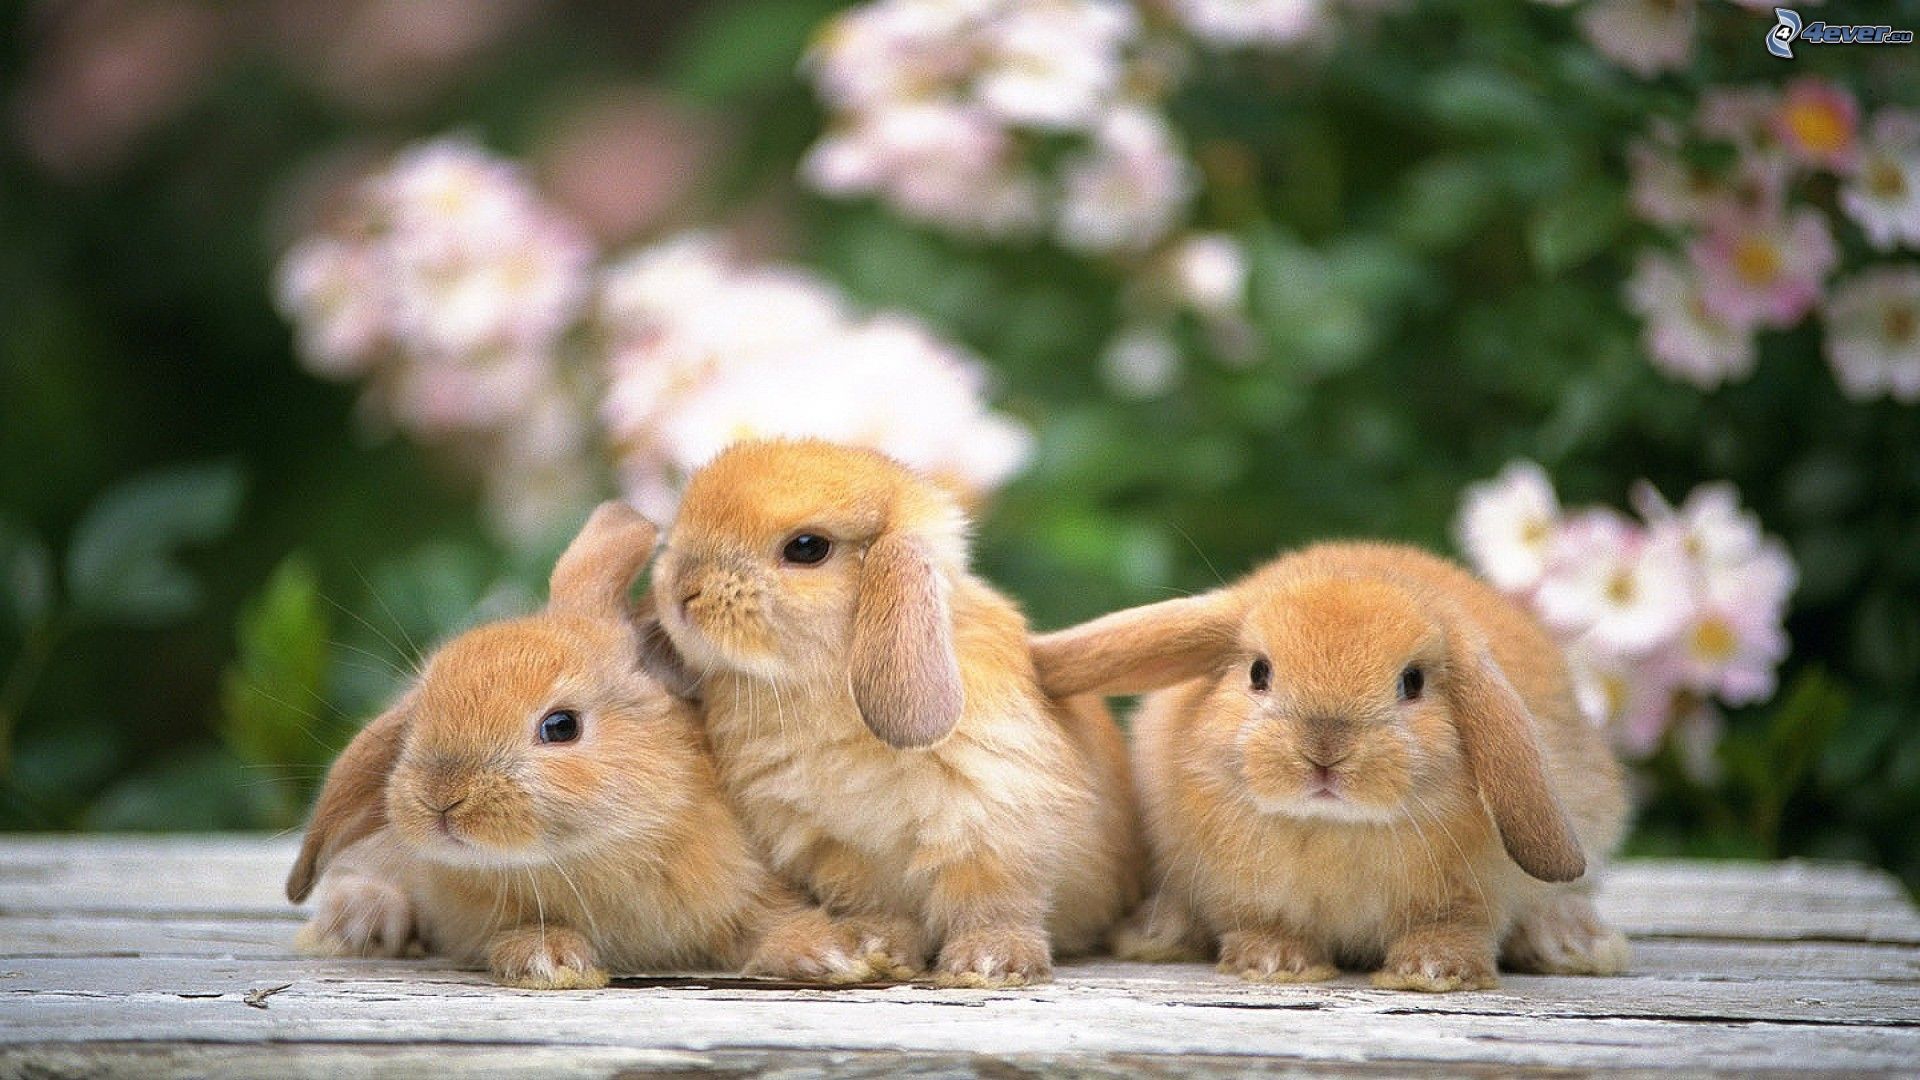 Cute Bunny Desktop Wallpapers